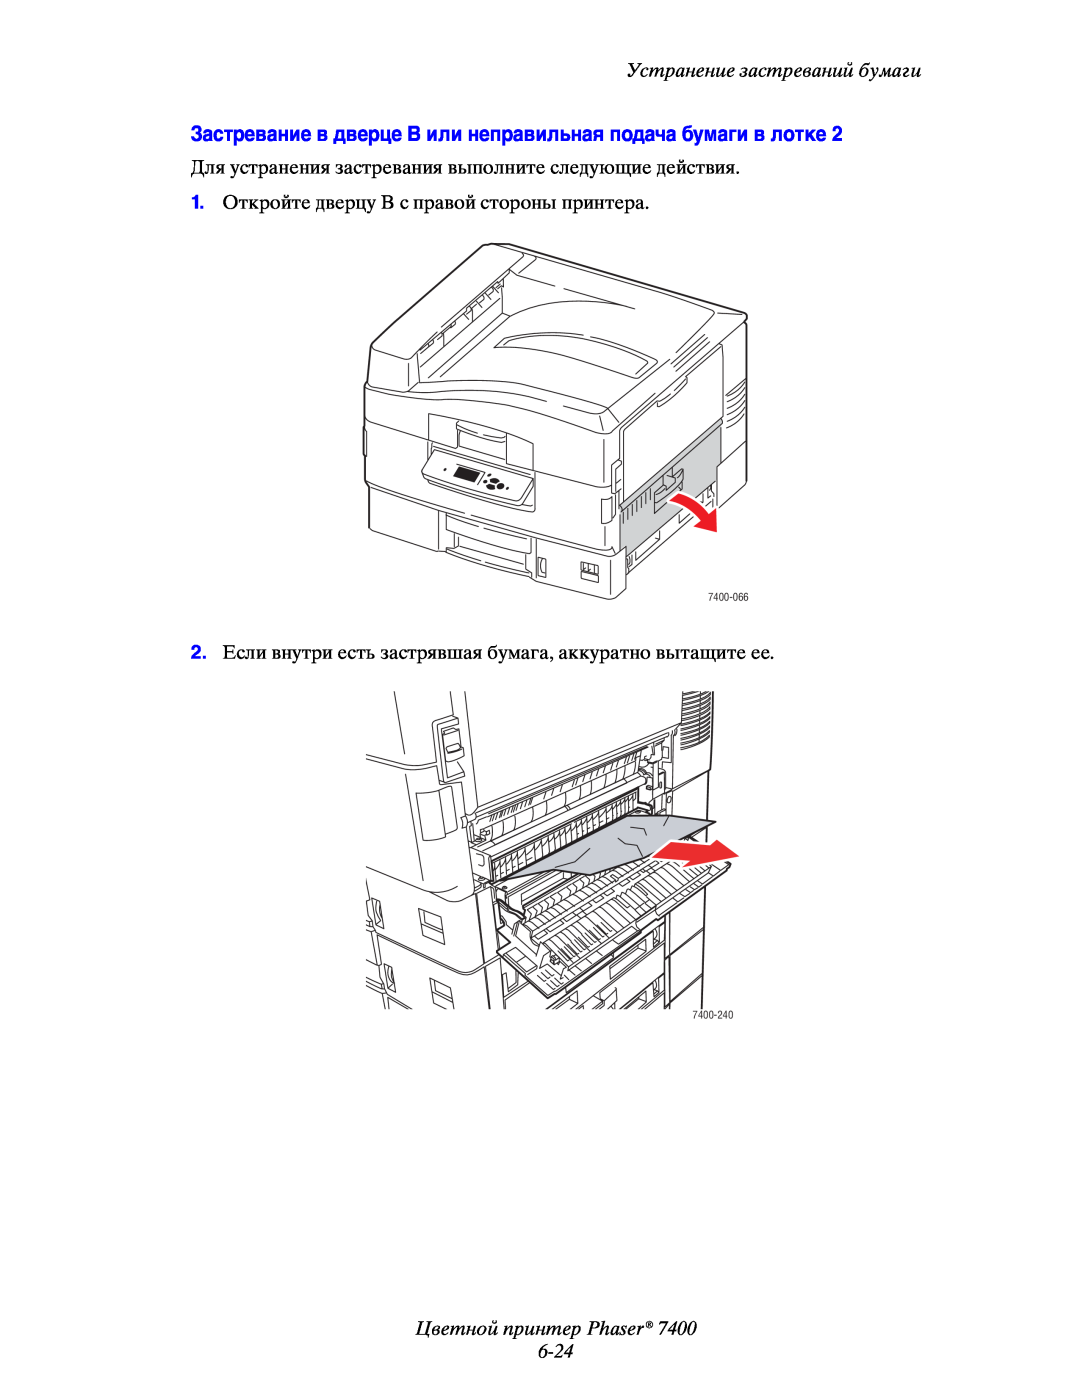 Xerox 7400 manual Цветной принтер Phaser 6-24, Устранение застреваний бумаги, 1.Откройте дверцу B с правой стороны принтера 